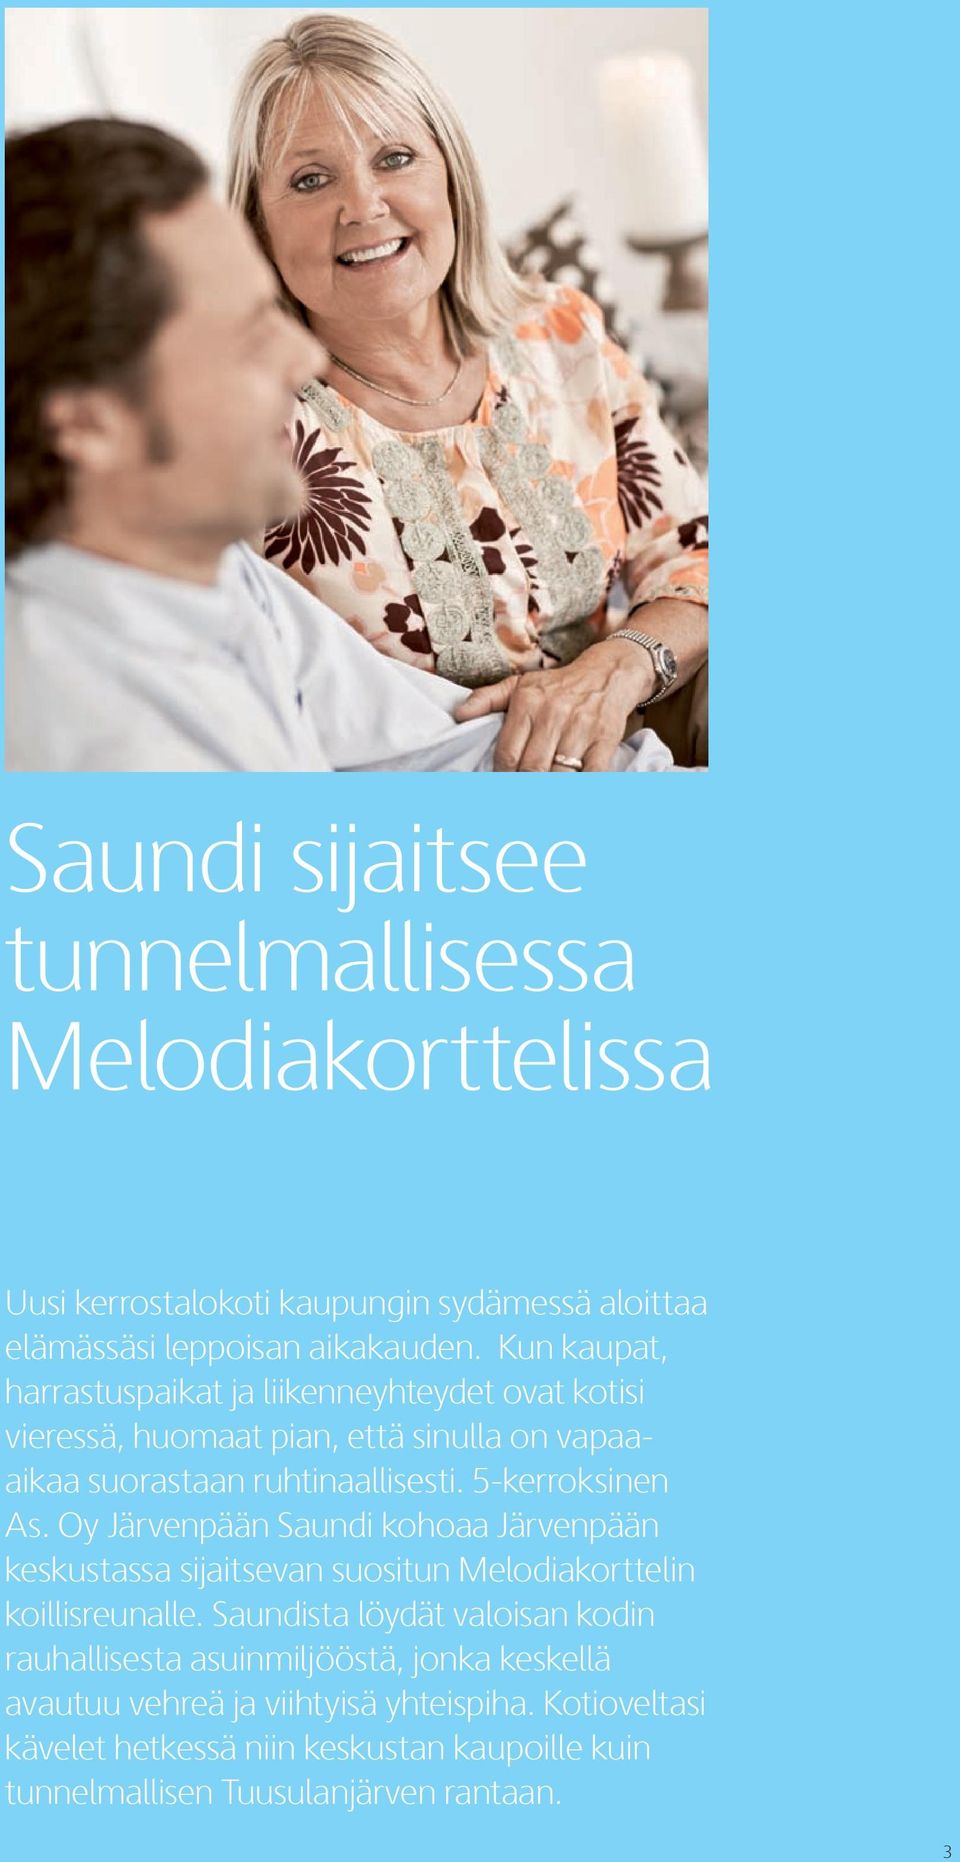 5-kerroksinen As. Oy Järvenpään aundi kohoaa Järvenpään keskustassa sijaitsevan suositun Melodiakorttelin koillisreunalle.